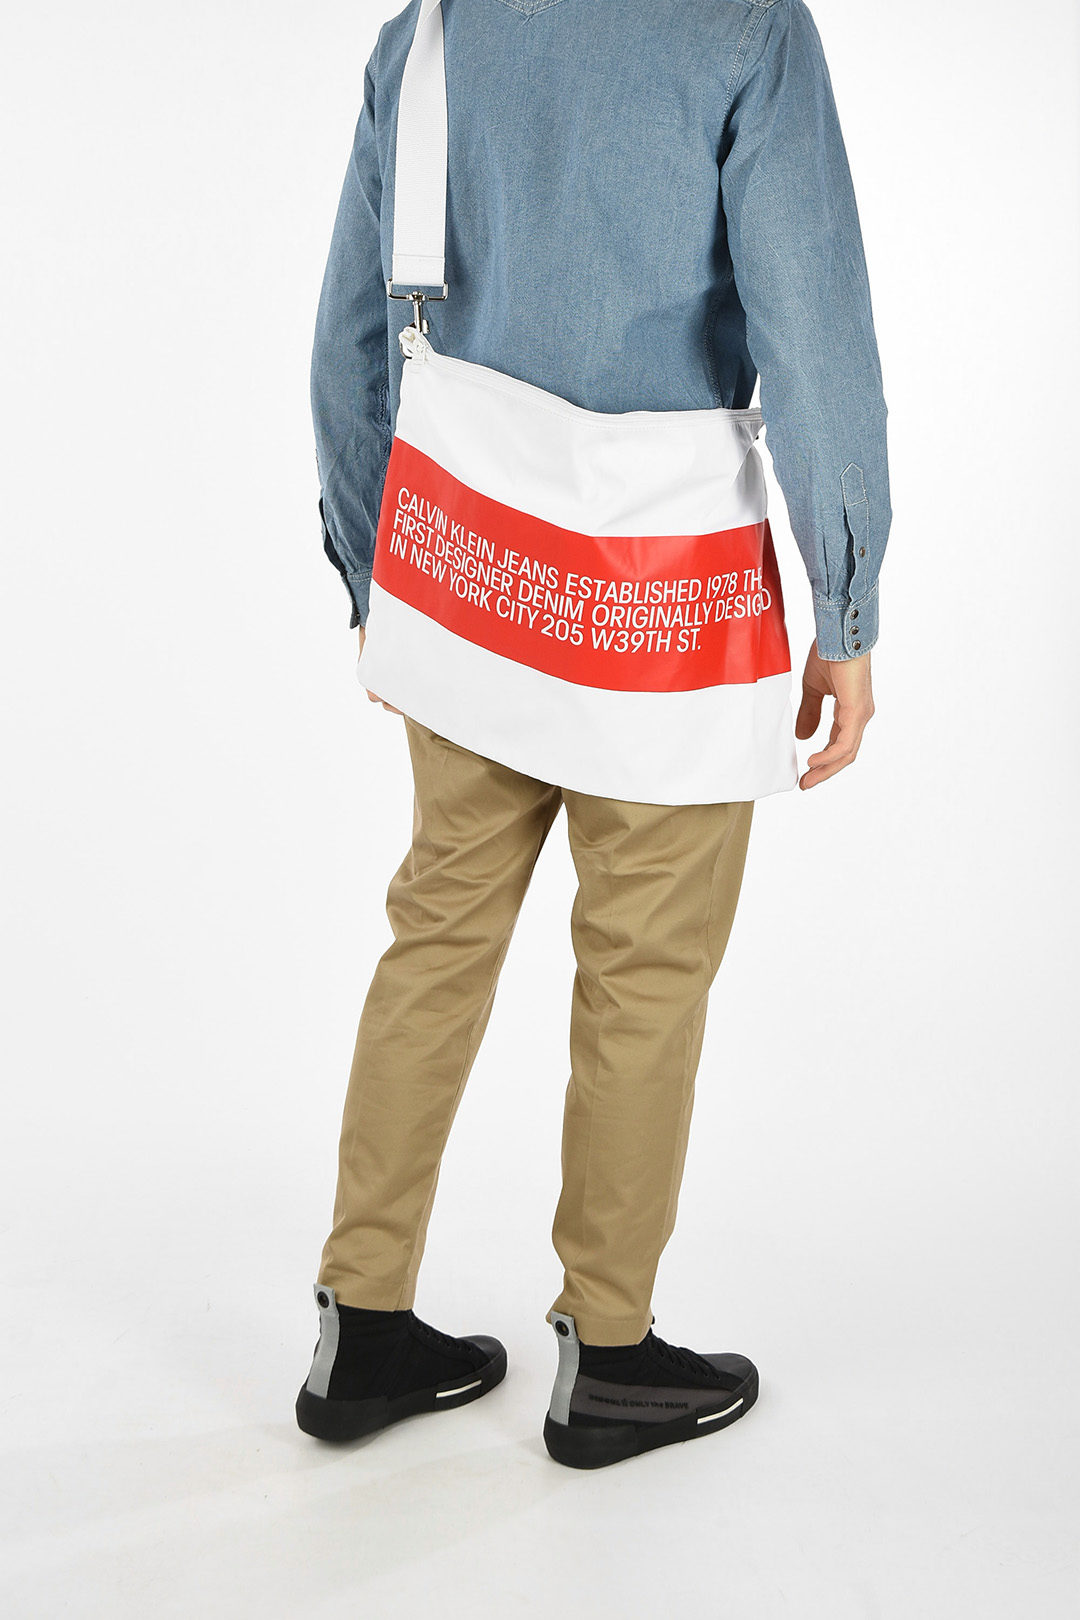 Calvin Klein EST 1978 JEANS Fabric Shoulder Bag men - Glamood Outlet